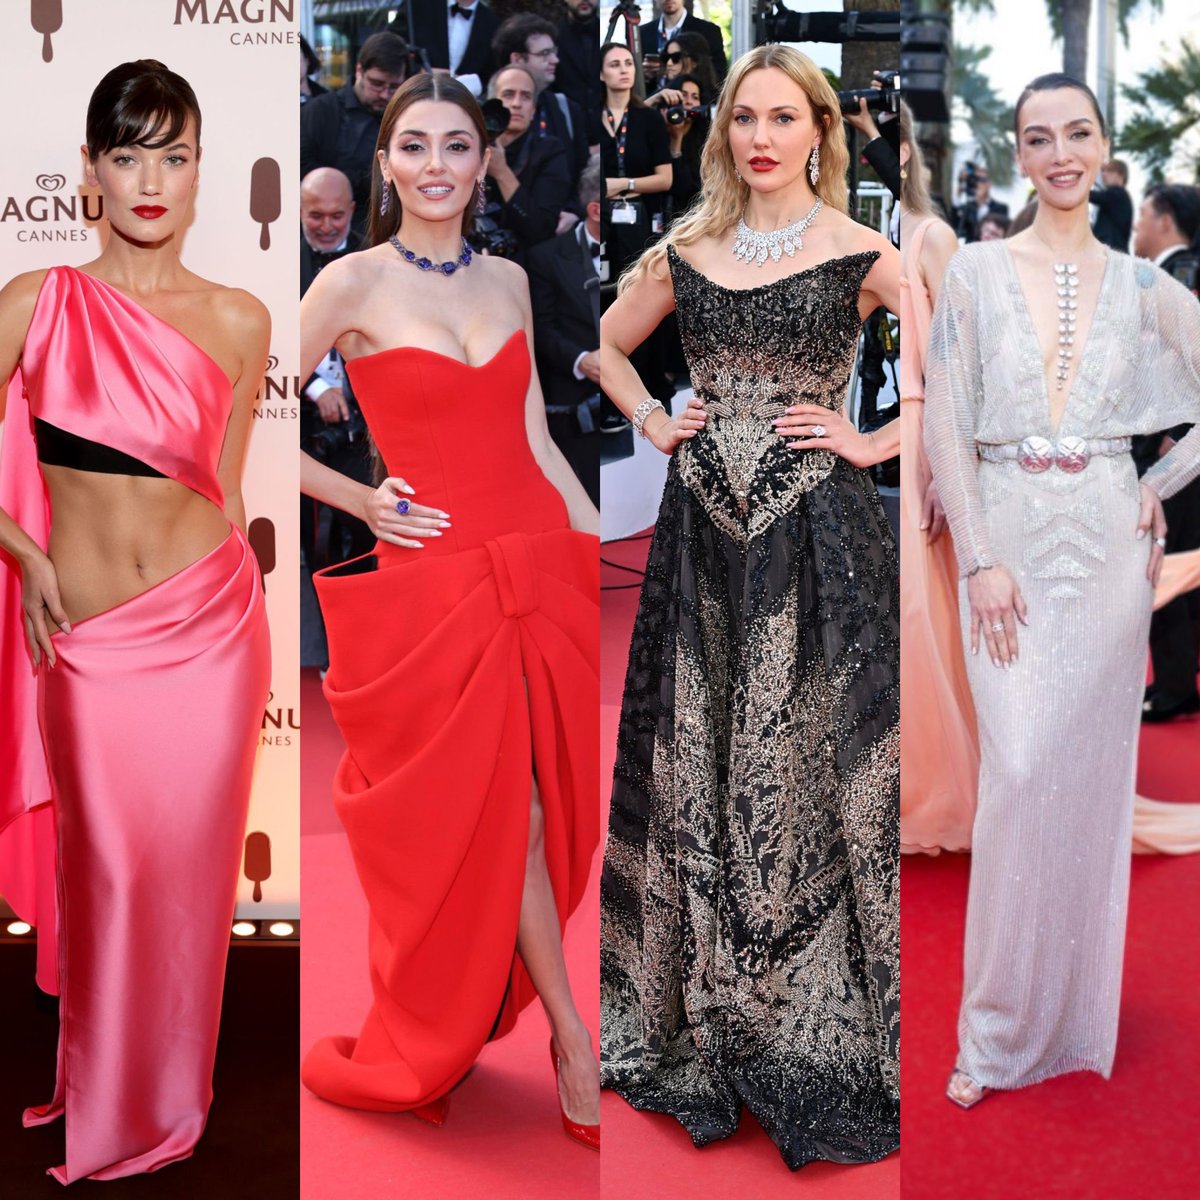 Cannes Film Festivali’ne katılan Türk kadın oyuncularından favoriniz kim? - Pınar Deniz - Hande Erçel - Meryem Uzerli - Birce Akalay